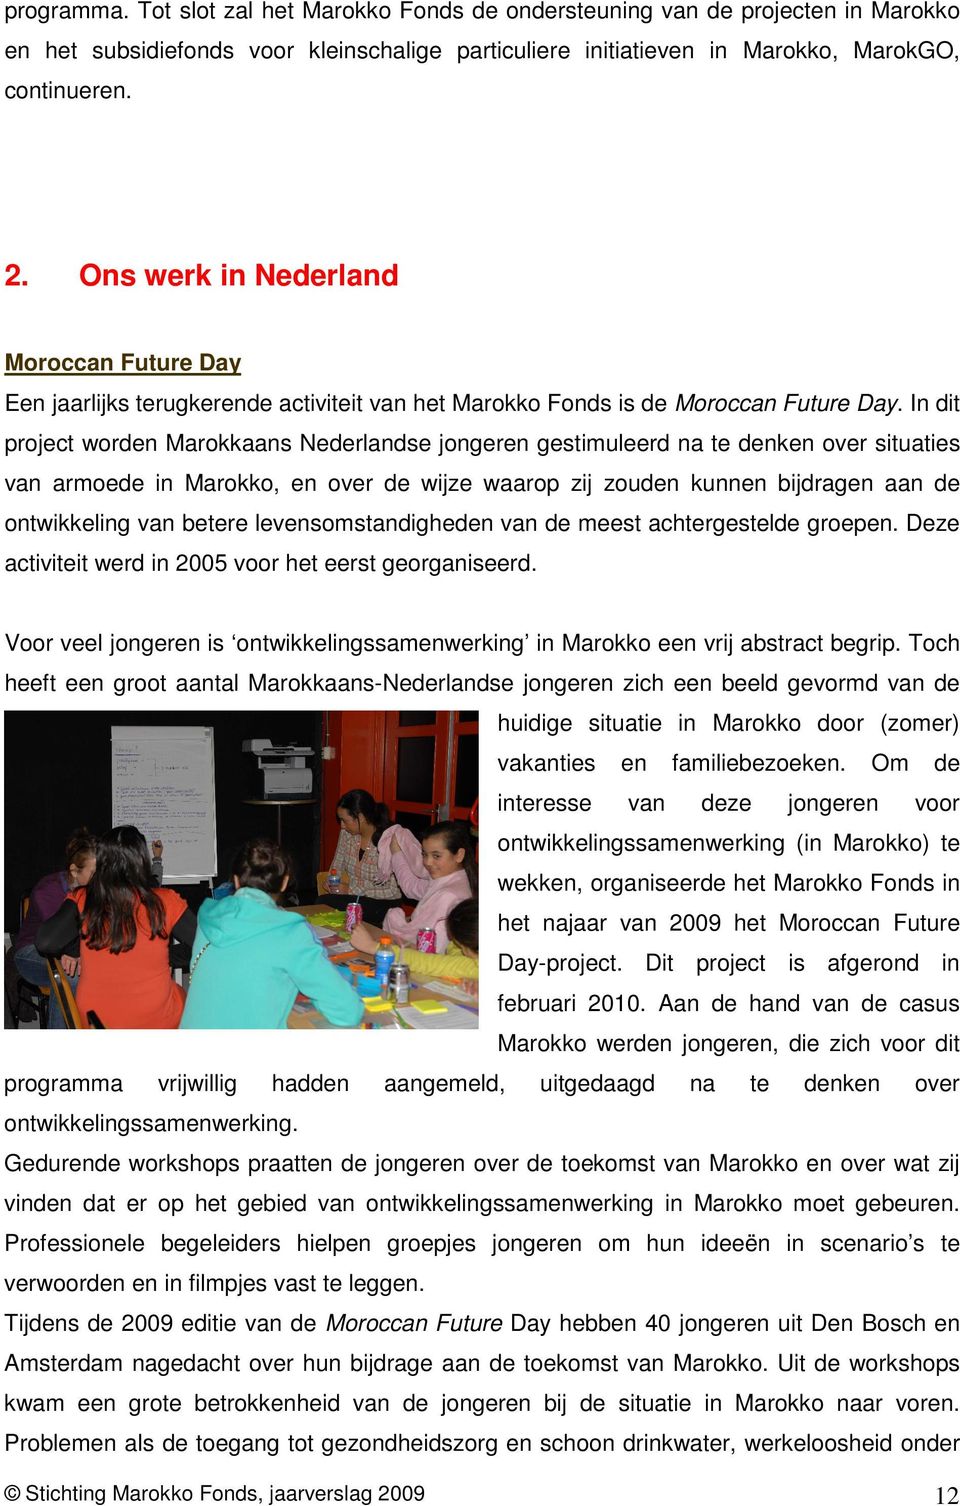 In dit project worden Marokkaans Nederlandse jongeren gestimuleerd na te denken over situaties van armoede in Marokko, en over de wijze waarop zij zouden kunnen bijdragen aan de ontwikkeling van